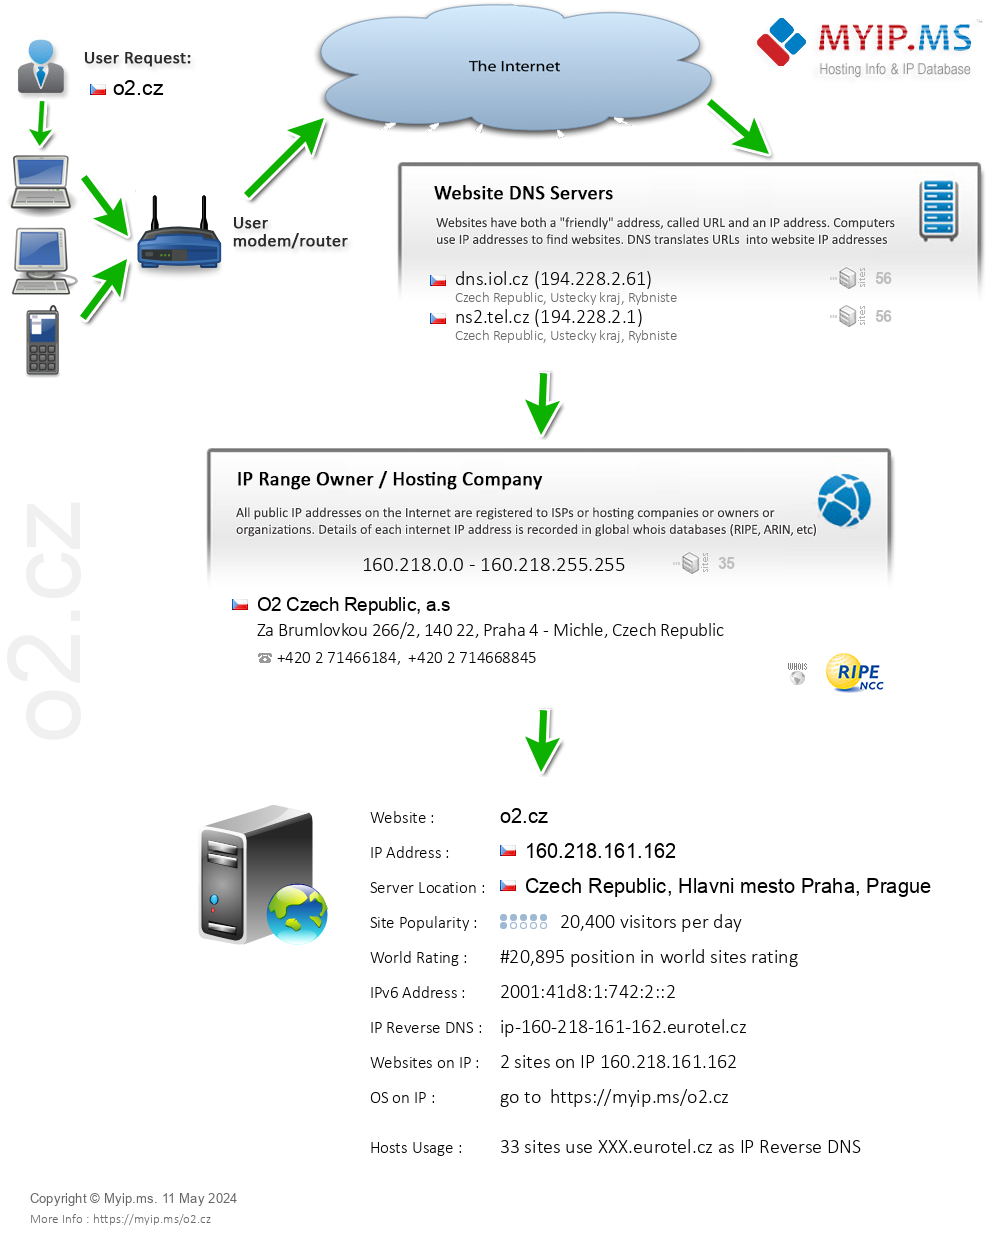 O2.cz - Website Hosting Visual IP Diagram